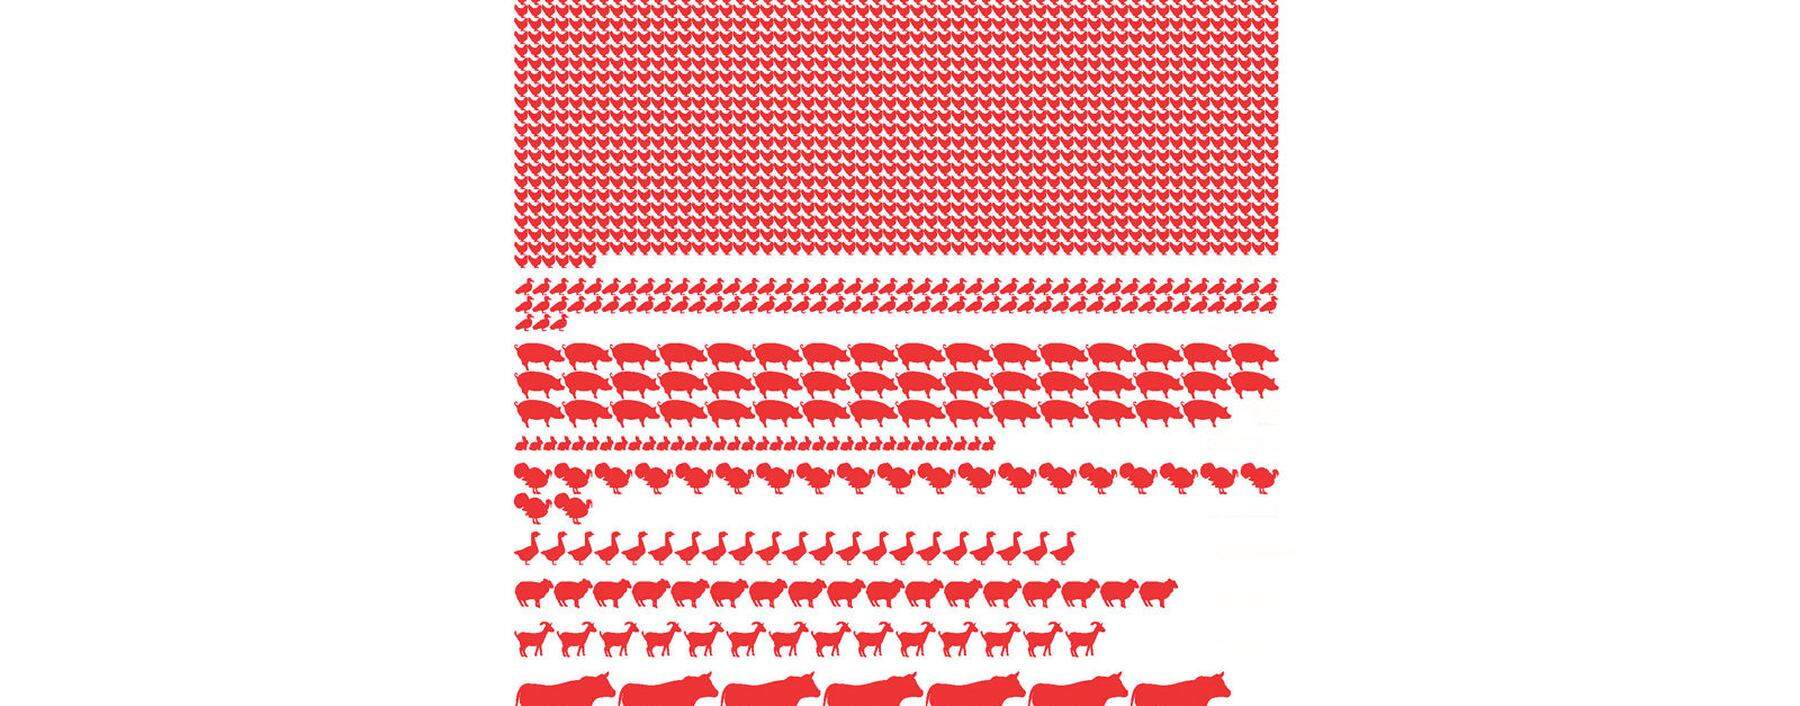 Vor der Schlachtbank. ­Anzahl der Tiere, die pro Sekunde weltweit geschlachtet werden. 